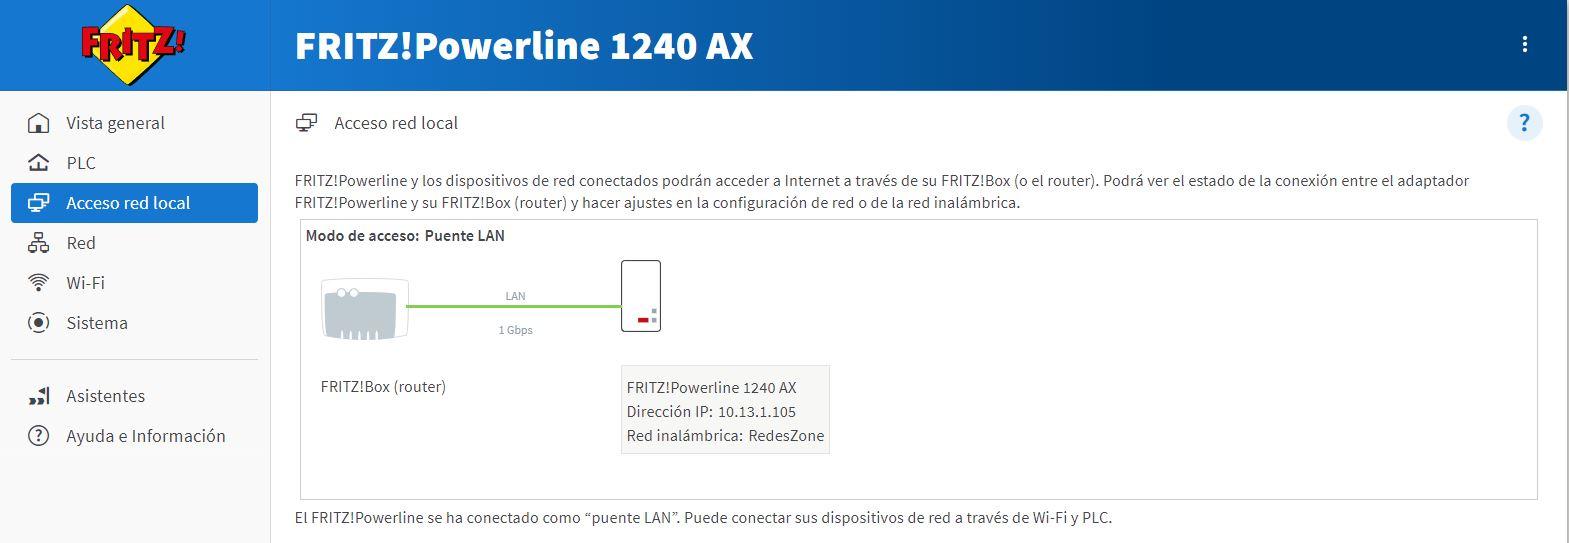 Configurar AVM FRITZ!Powerline 1240 AX en modo puente LAN